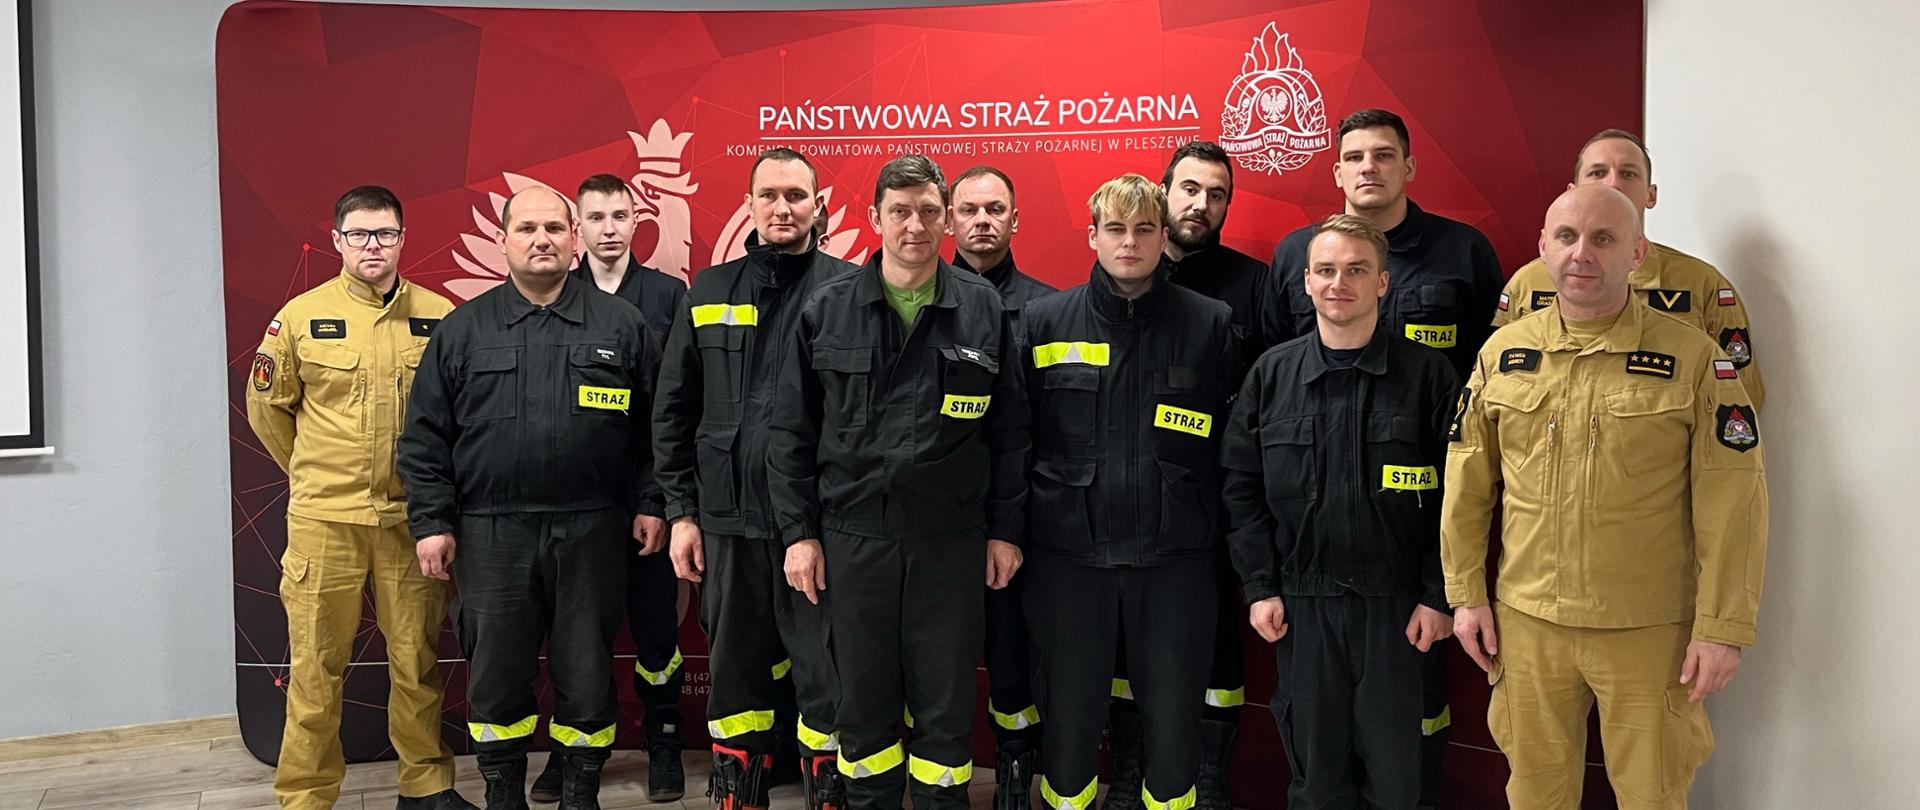 Grupa mężczyzn ubranych w mundury straży pożarnej stoi w dwu szeregu przed czerwonym banerem Państwowej Straży Pożarnej.